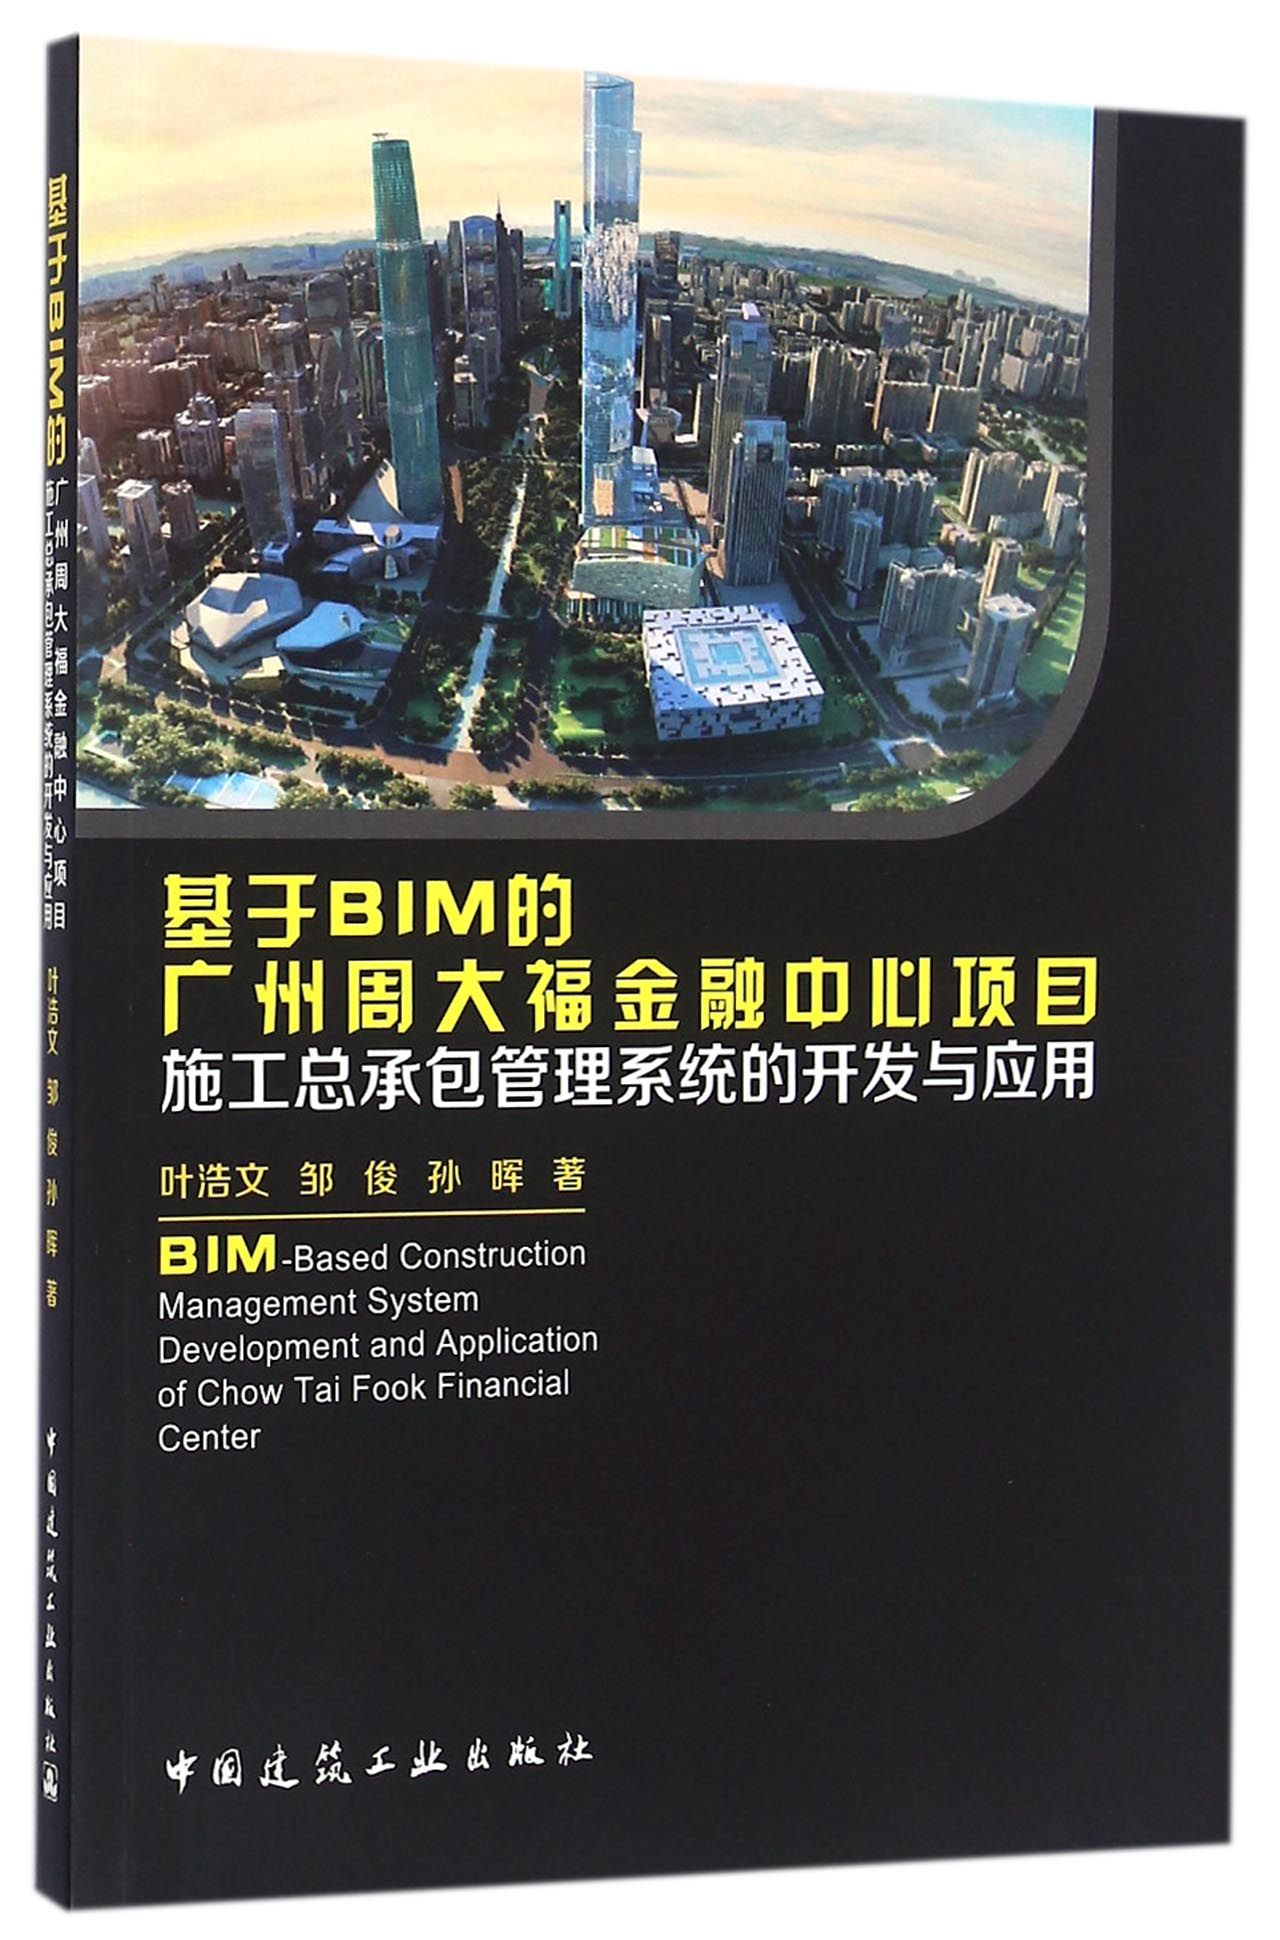 基于BIM的广州周大福金融中心项目施工总承包管理系统的开发与应用 epub格式下载